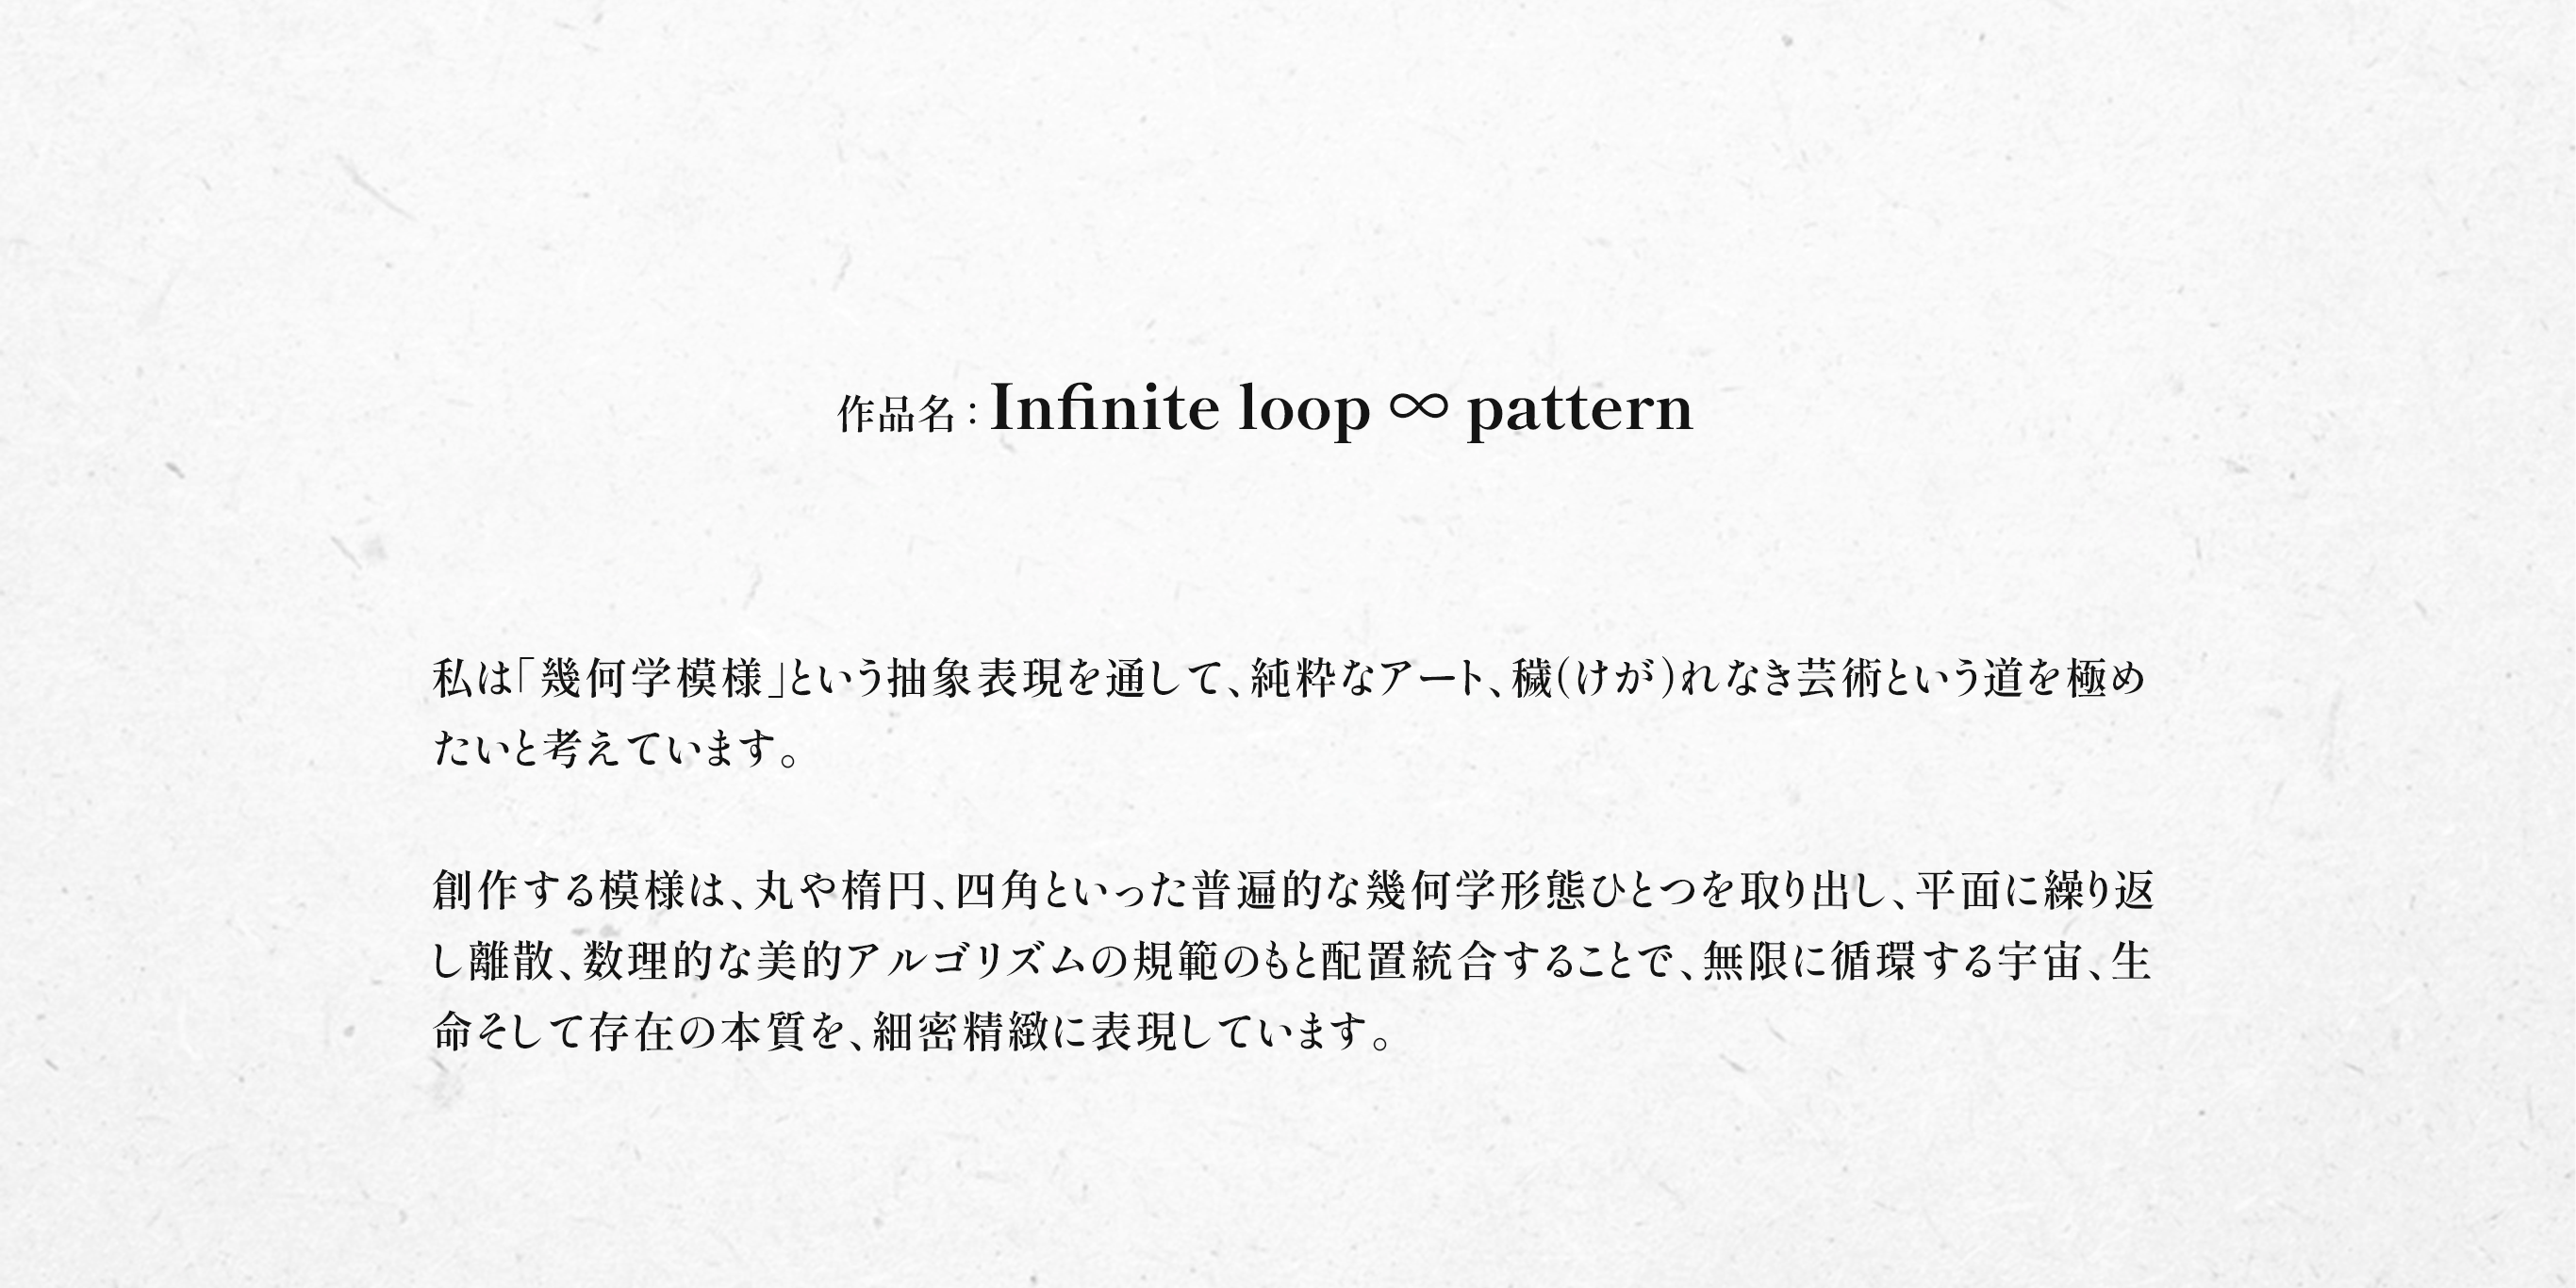 Infinite loop ∞ pattern